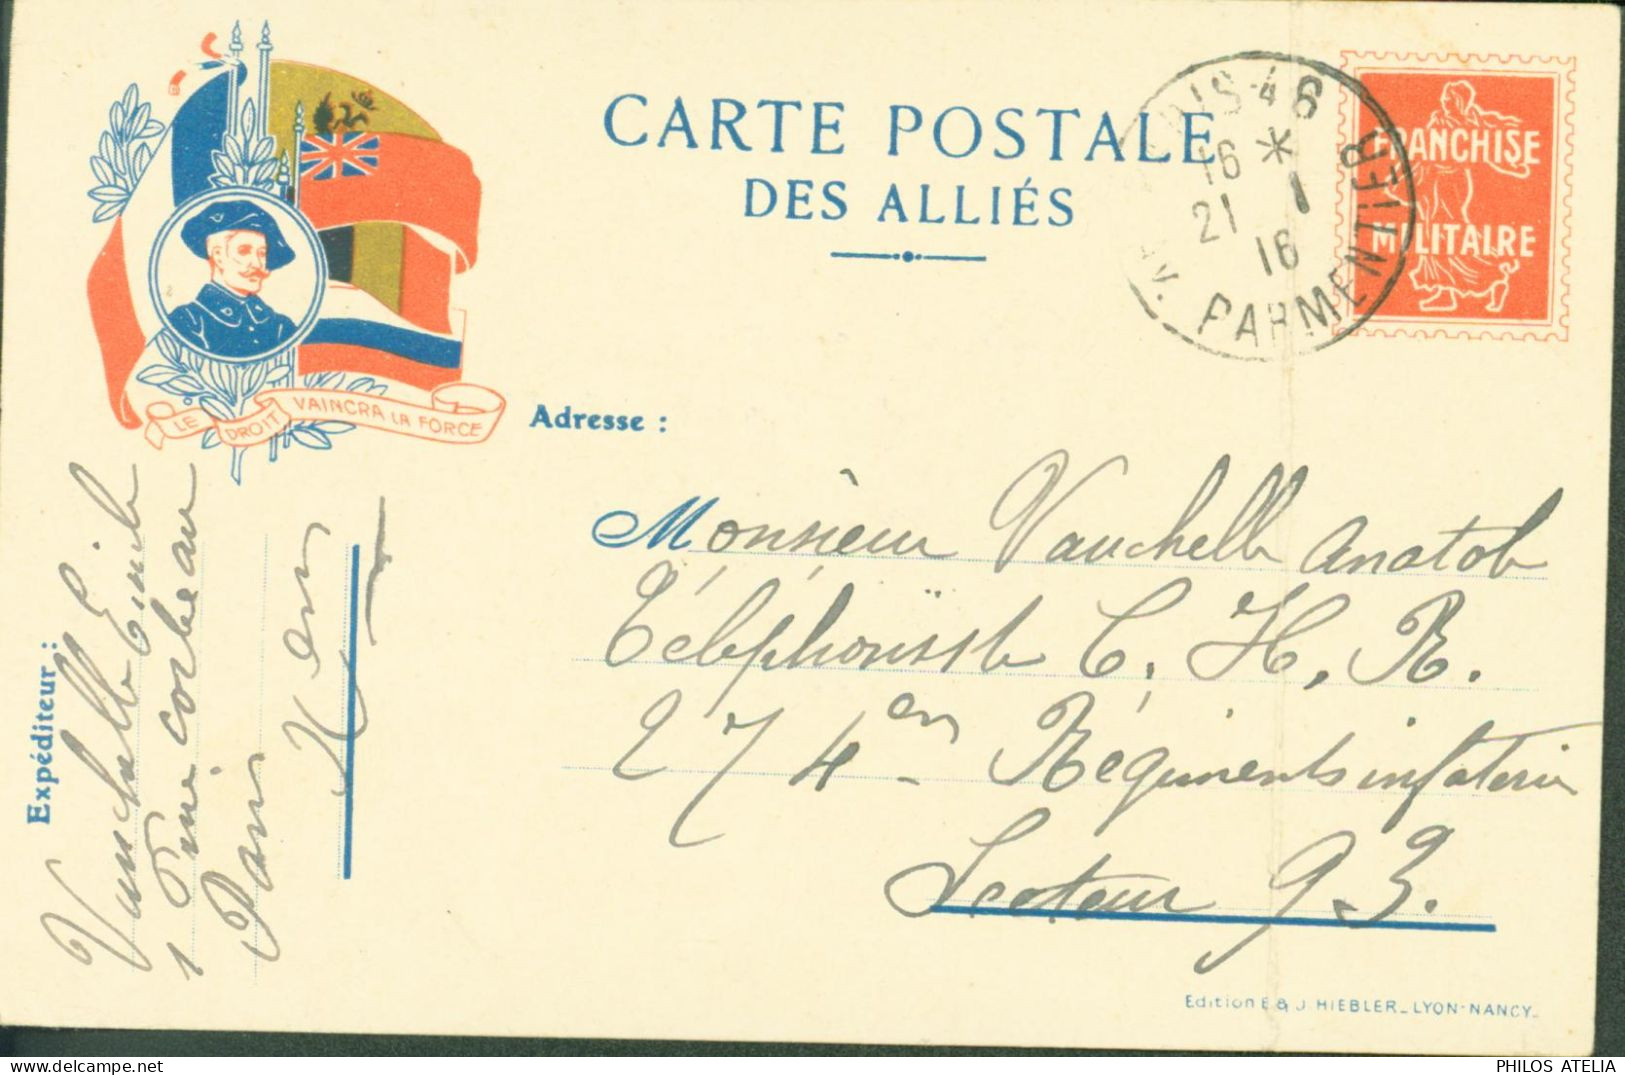 Guerre 14 Carte Postale Des Alliés Drapeaux Franchise Militaire Fausse Semeuse CP FM Le Droit Vaincra La Force - Guerra De 1914-18